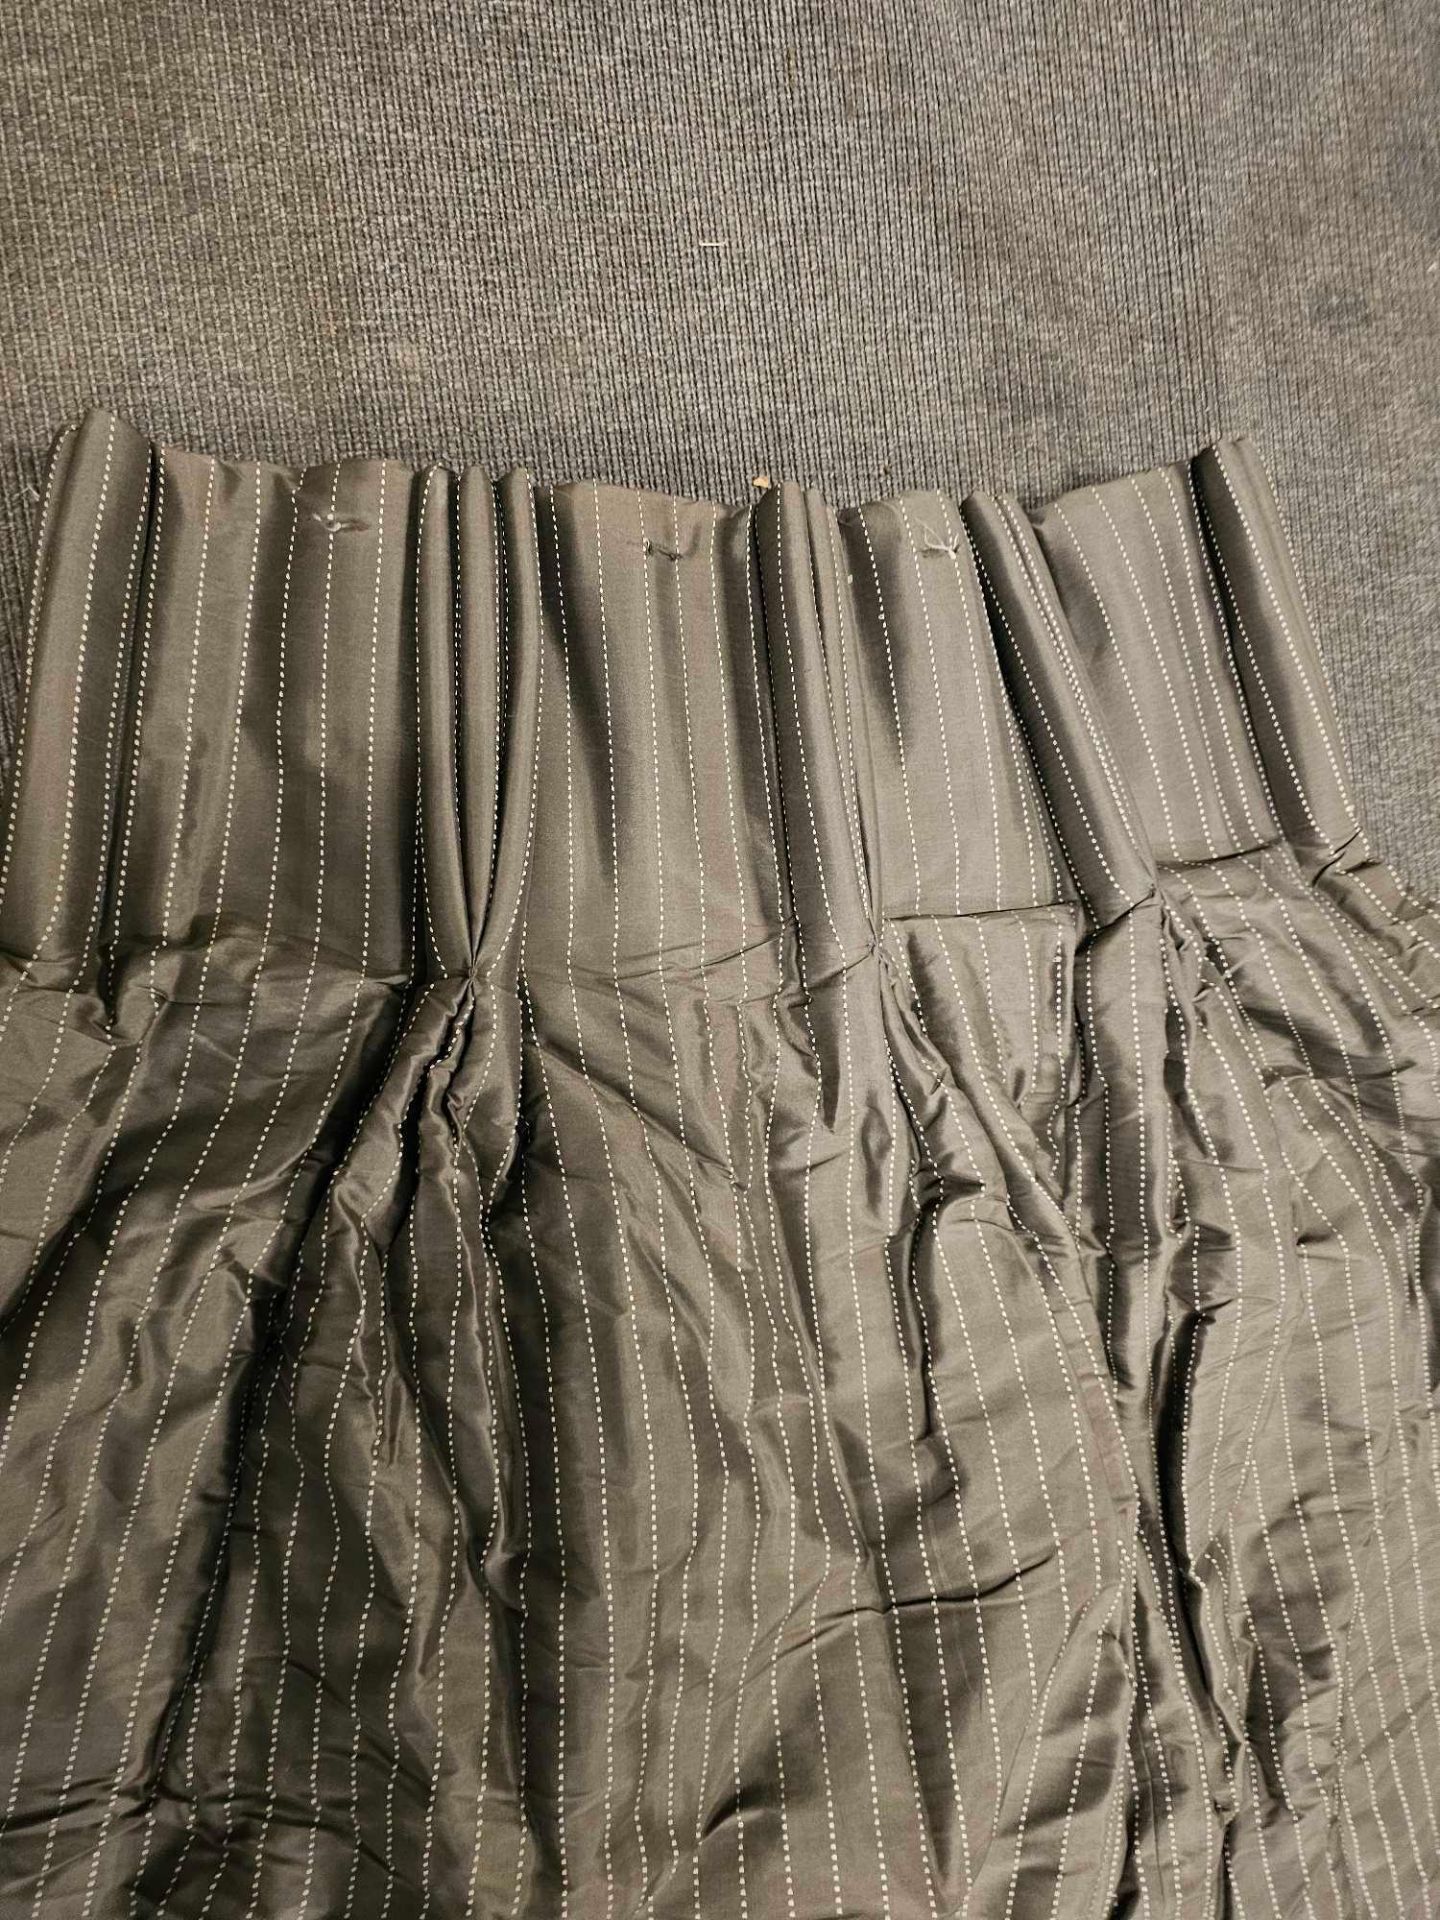 Pair Brown /White Striped Curtain Size 242 x 258cm ( Ref Dorchspa 102) - Bild 2 aus 3